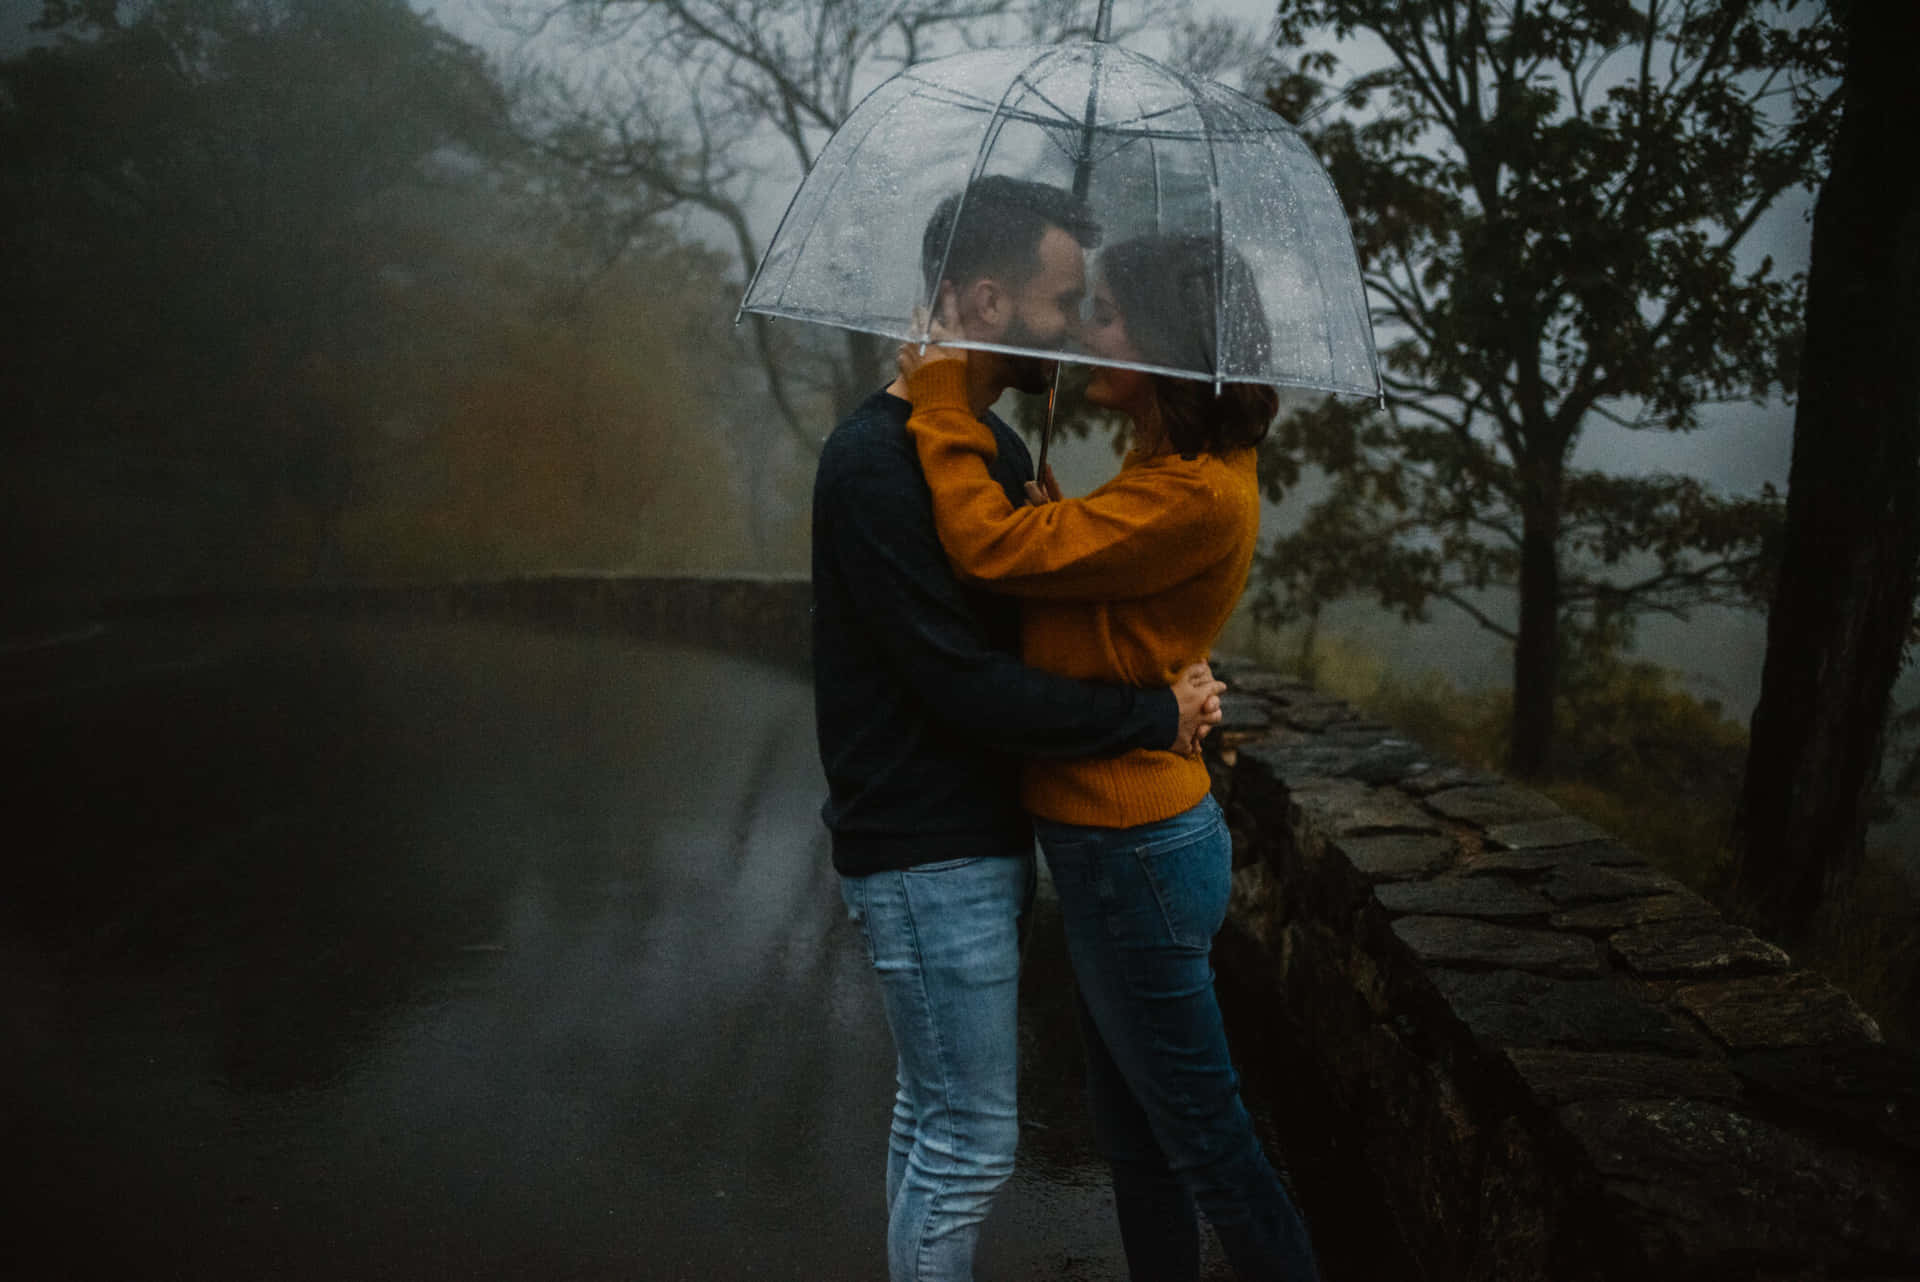 A Romantic Couple in the Rain